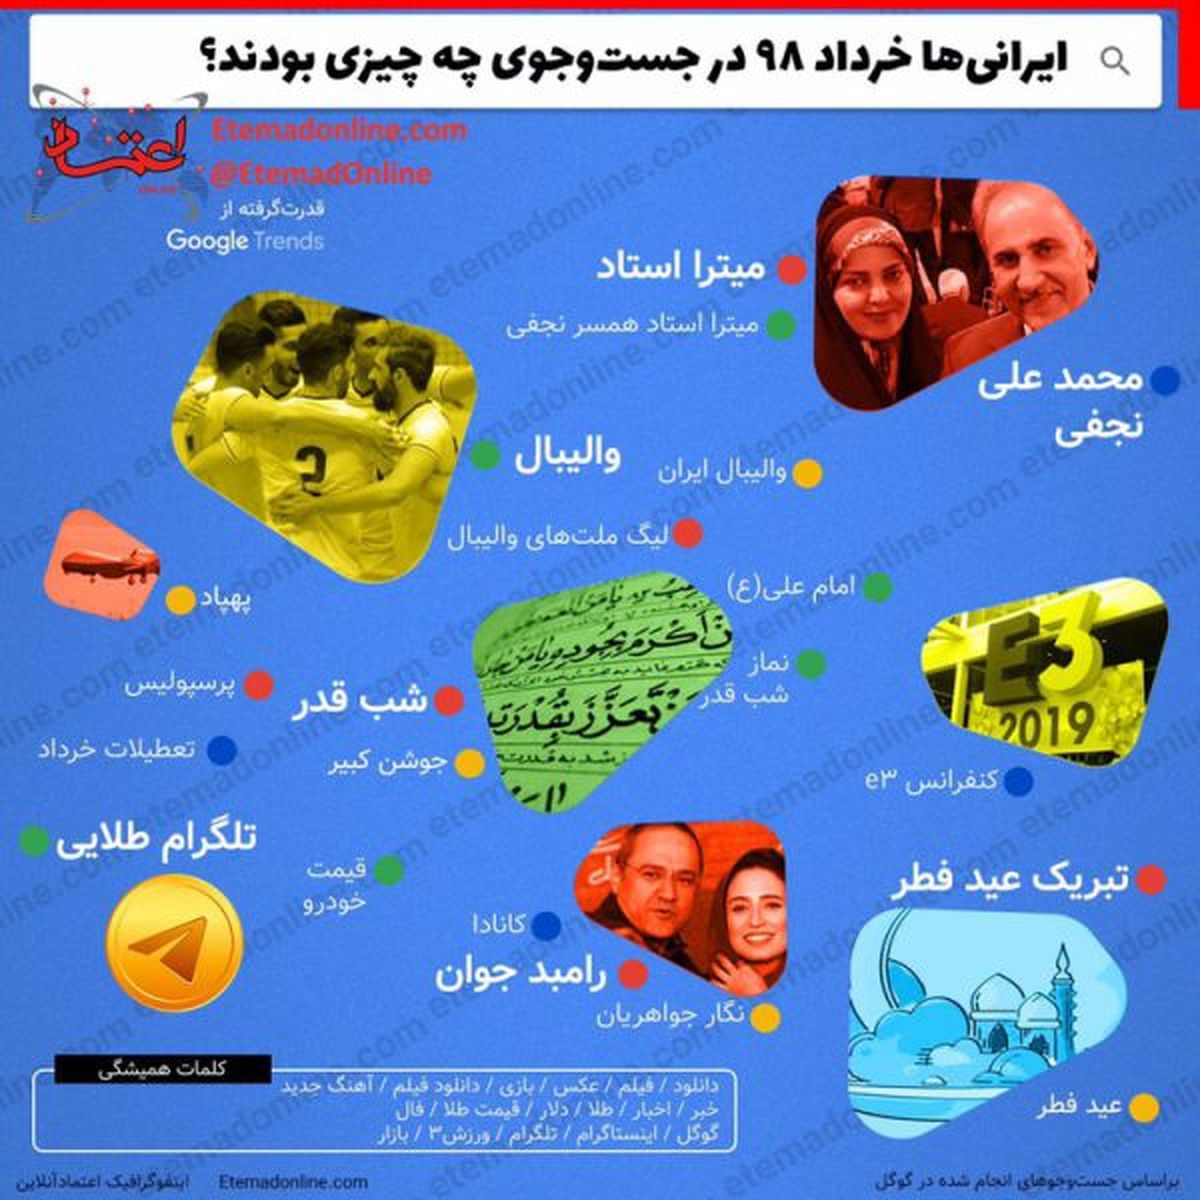 ایرانی‌ها خرداد ۹۸ در اینترنت در پی چه چیزی بودند؟